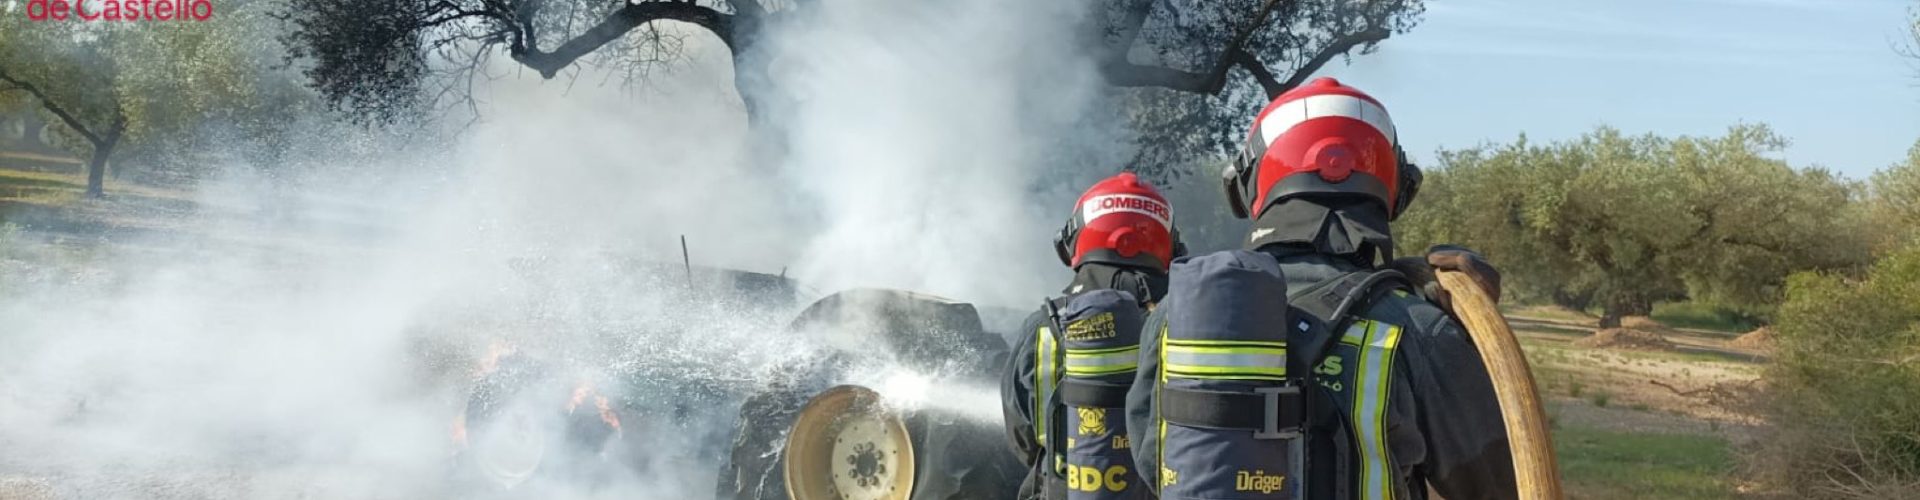 Incendio de un tractor en Canet lo Roig